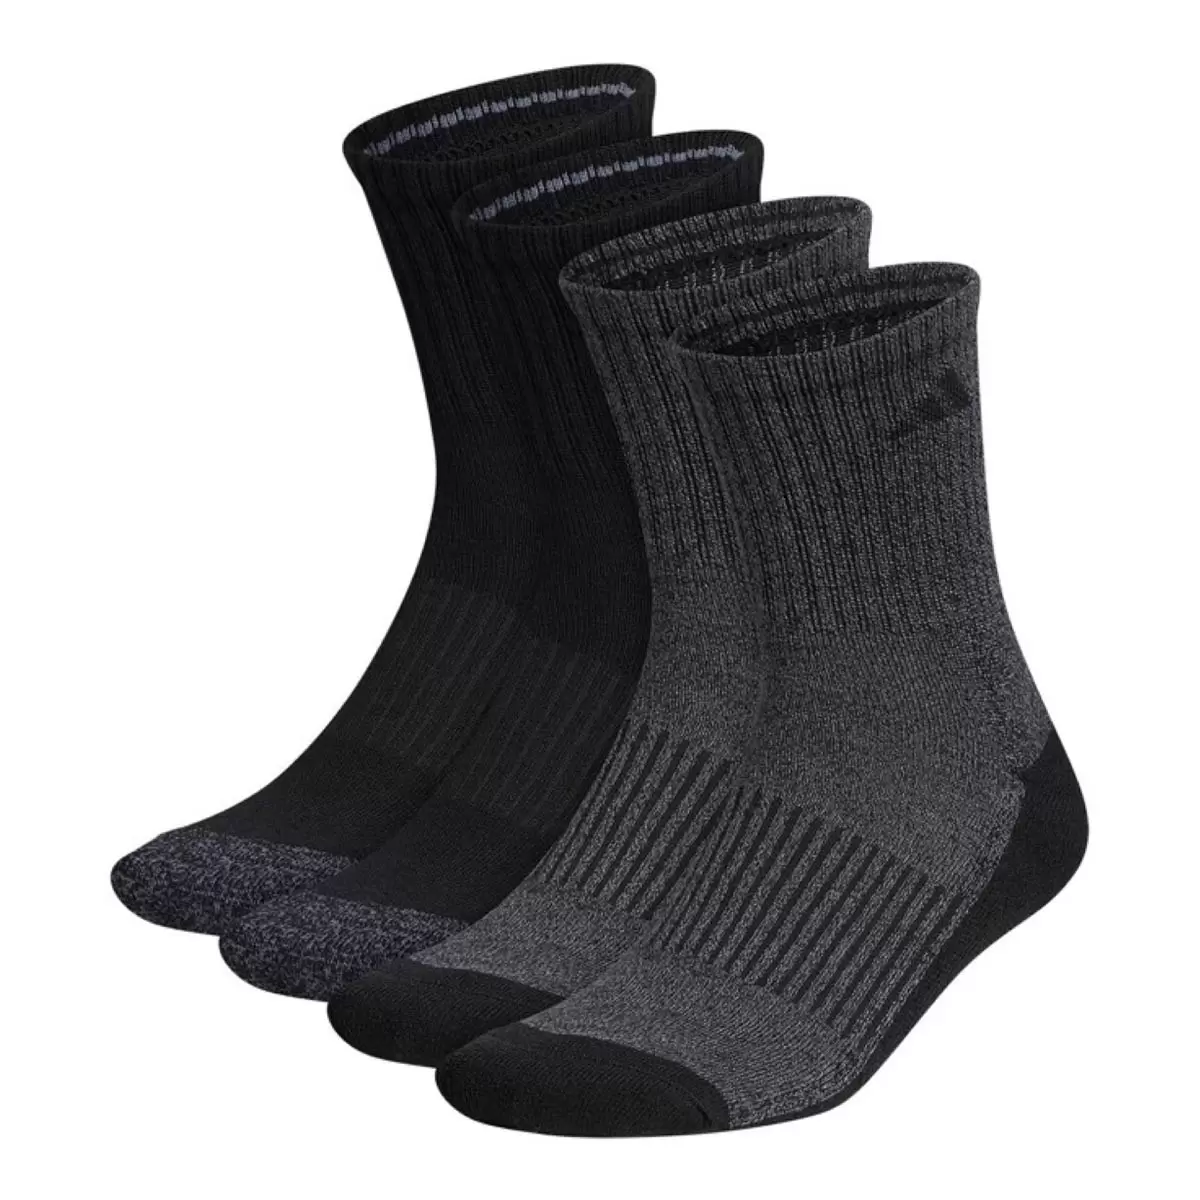 Adidas 男中筒運動襪 4雙組 黑色組